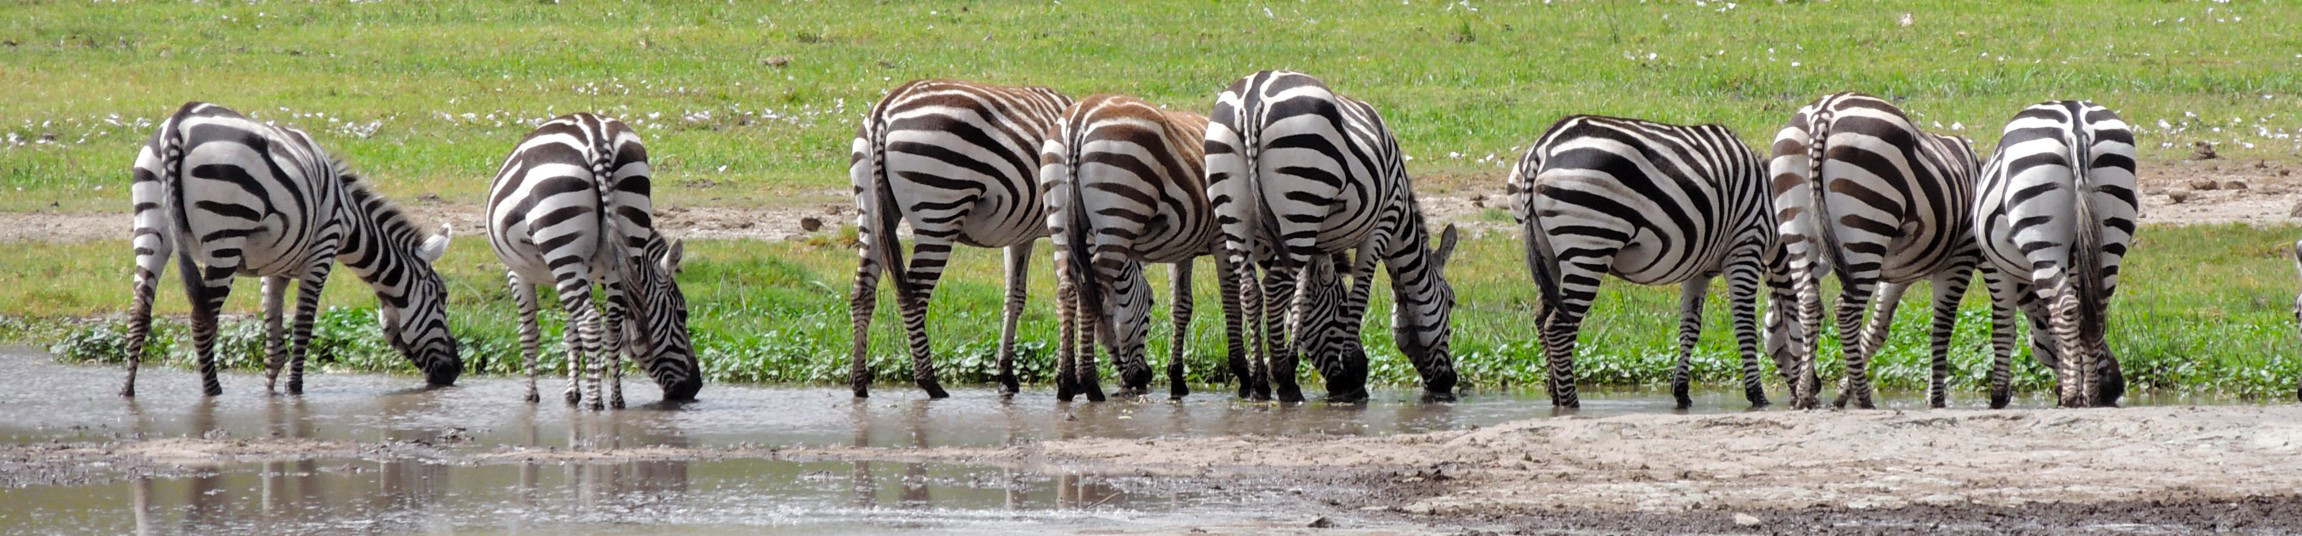 Zebry w Parku Narodowym Ngorongoro